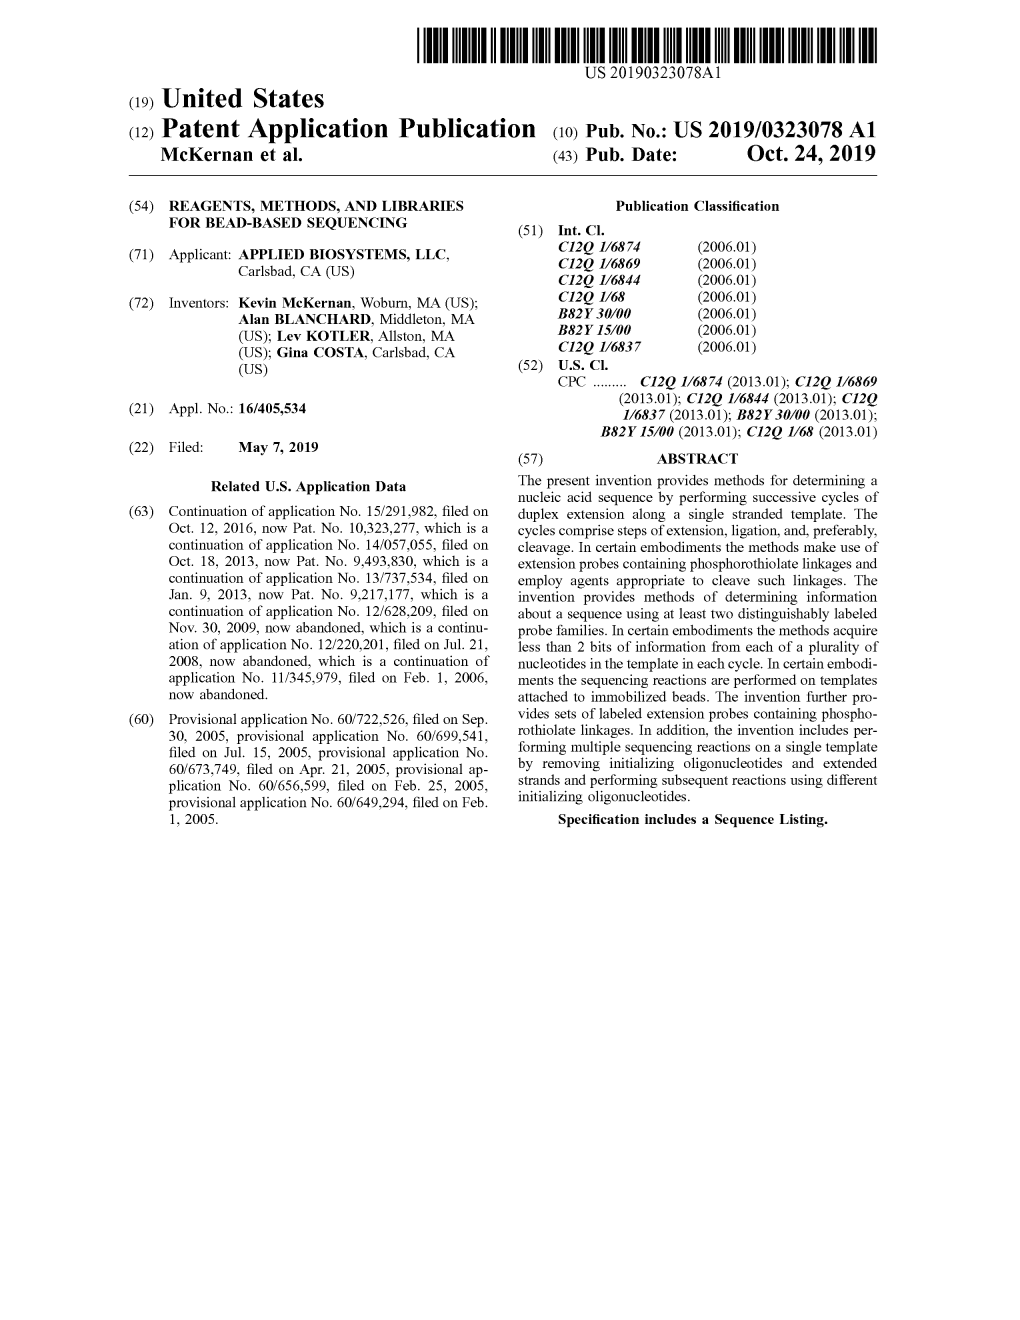 Patent Application Publication ( 10 ) Pub . No . : US 2019 / 0323078 A1